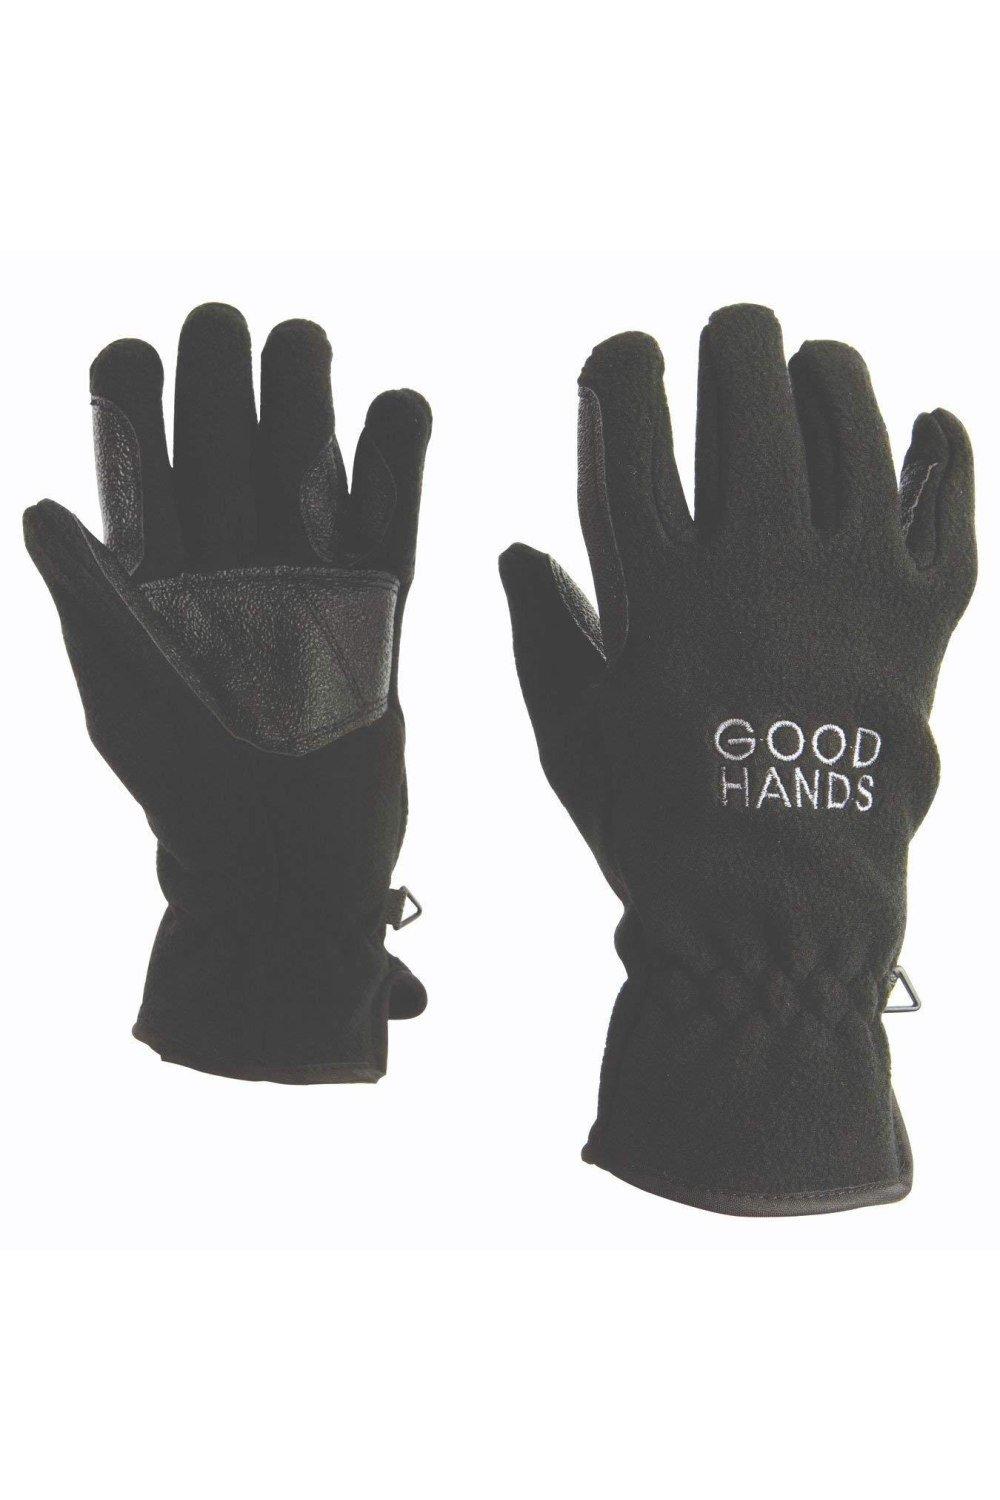 Флисовые перчатки для верховой езды Polar Dublin, черный перчатки atmosphere fresh биколор размер m усиленные пальцы пвх